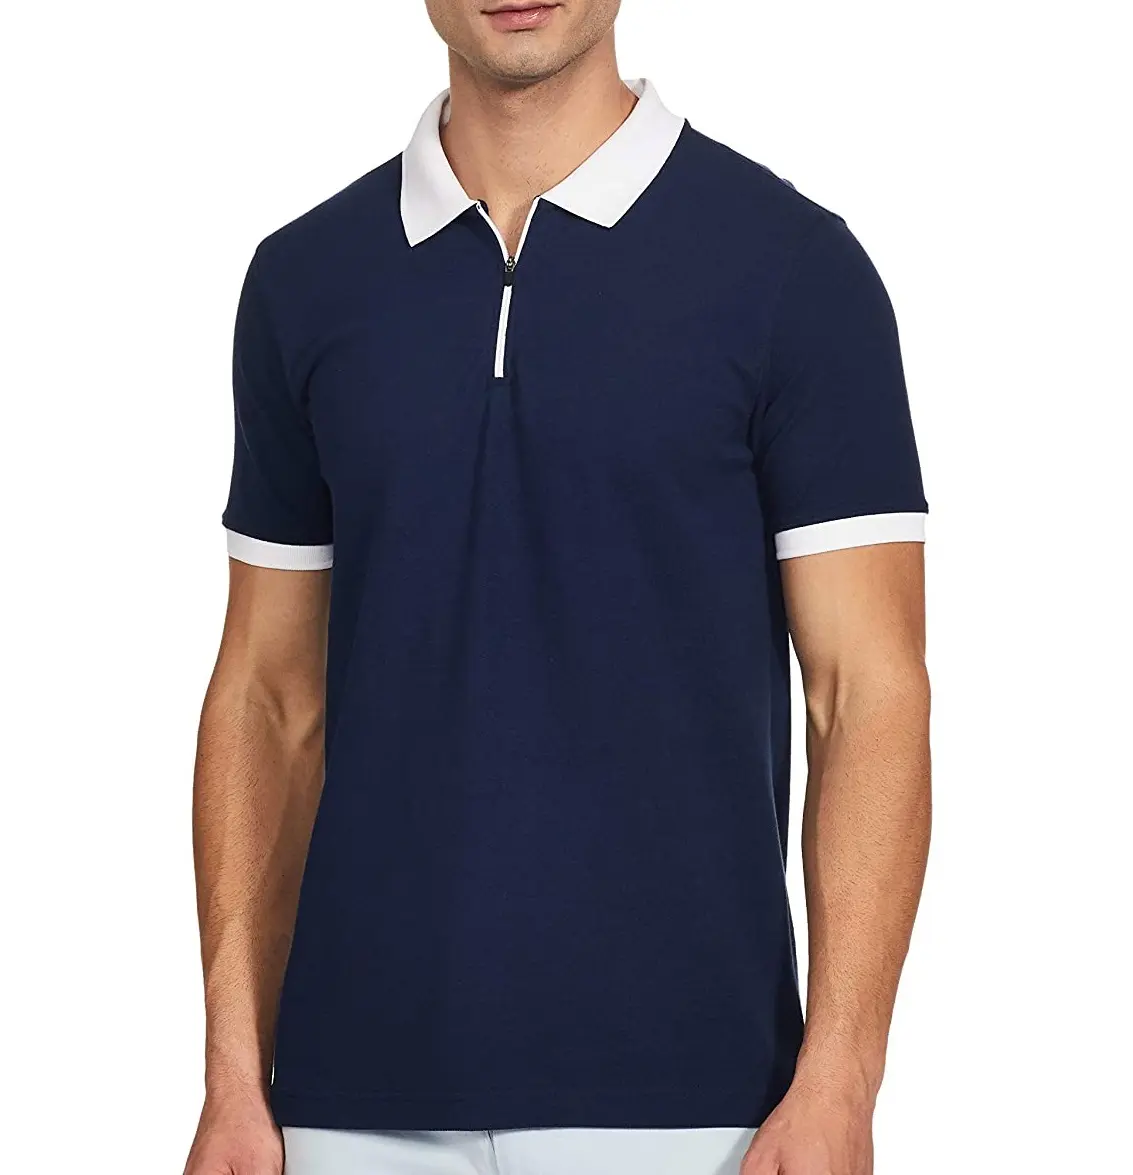 최신 스타일 새로운 패션 최고 제조 폴로 셔츠 OEM 서비스 사용자 정의 로고 조절 가격 폴로 셔츠